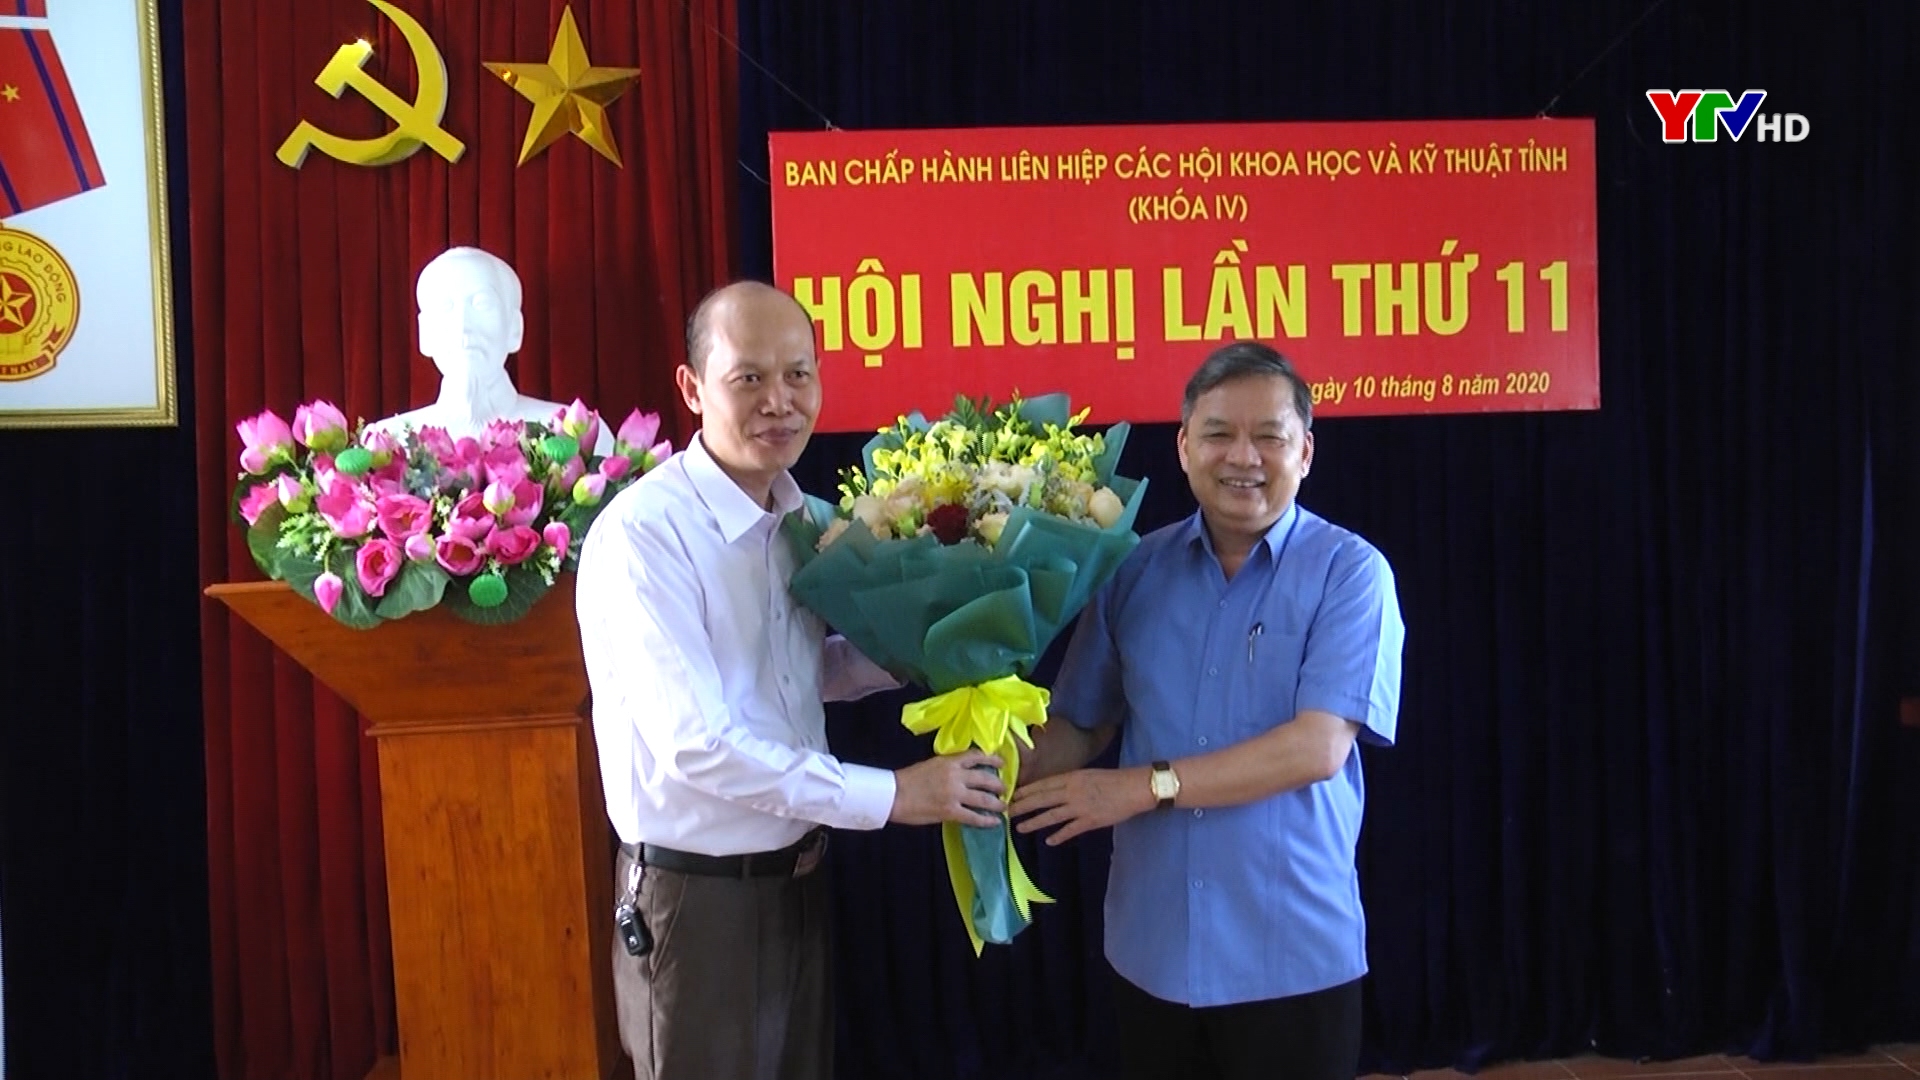 Đồng chí Nguyễn Bình Minh giữ chức Phó Chủ tịch Liên hiệp các Hội khoa học và kỹ thuật tỉnh Yên Bái